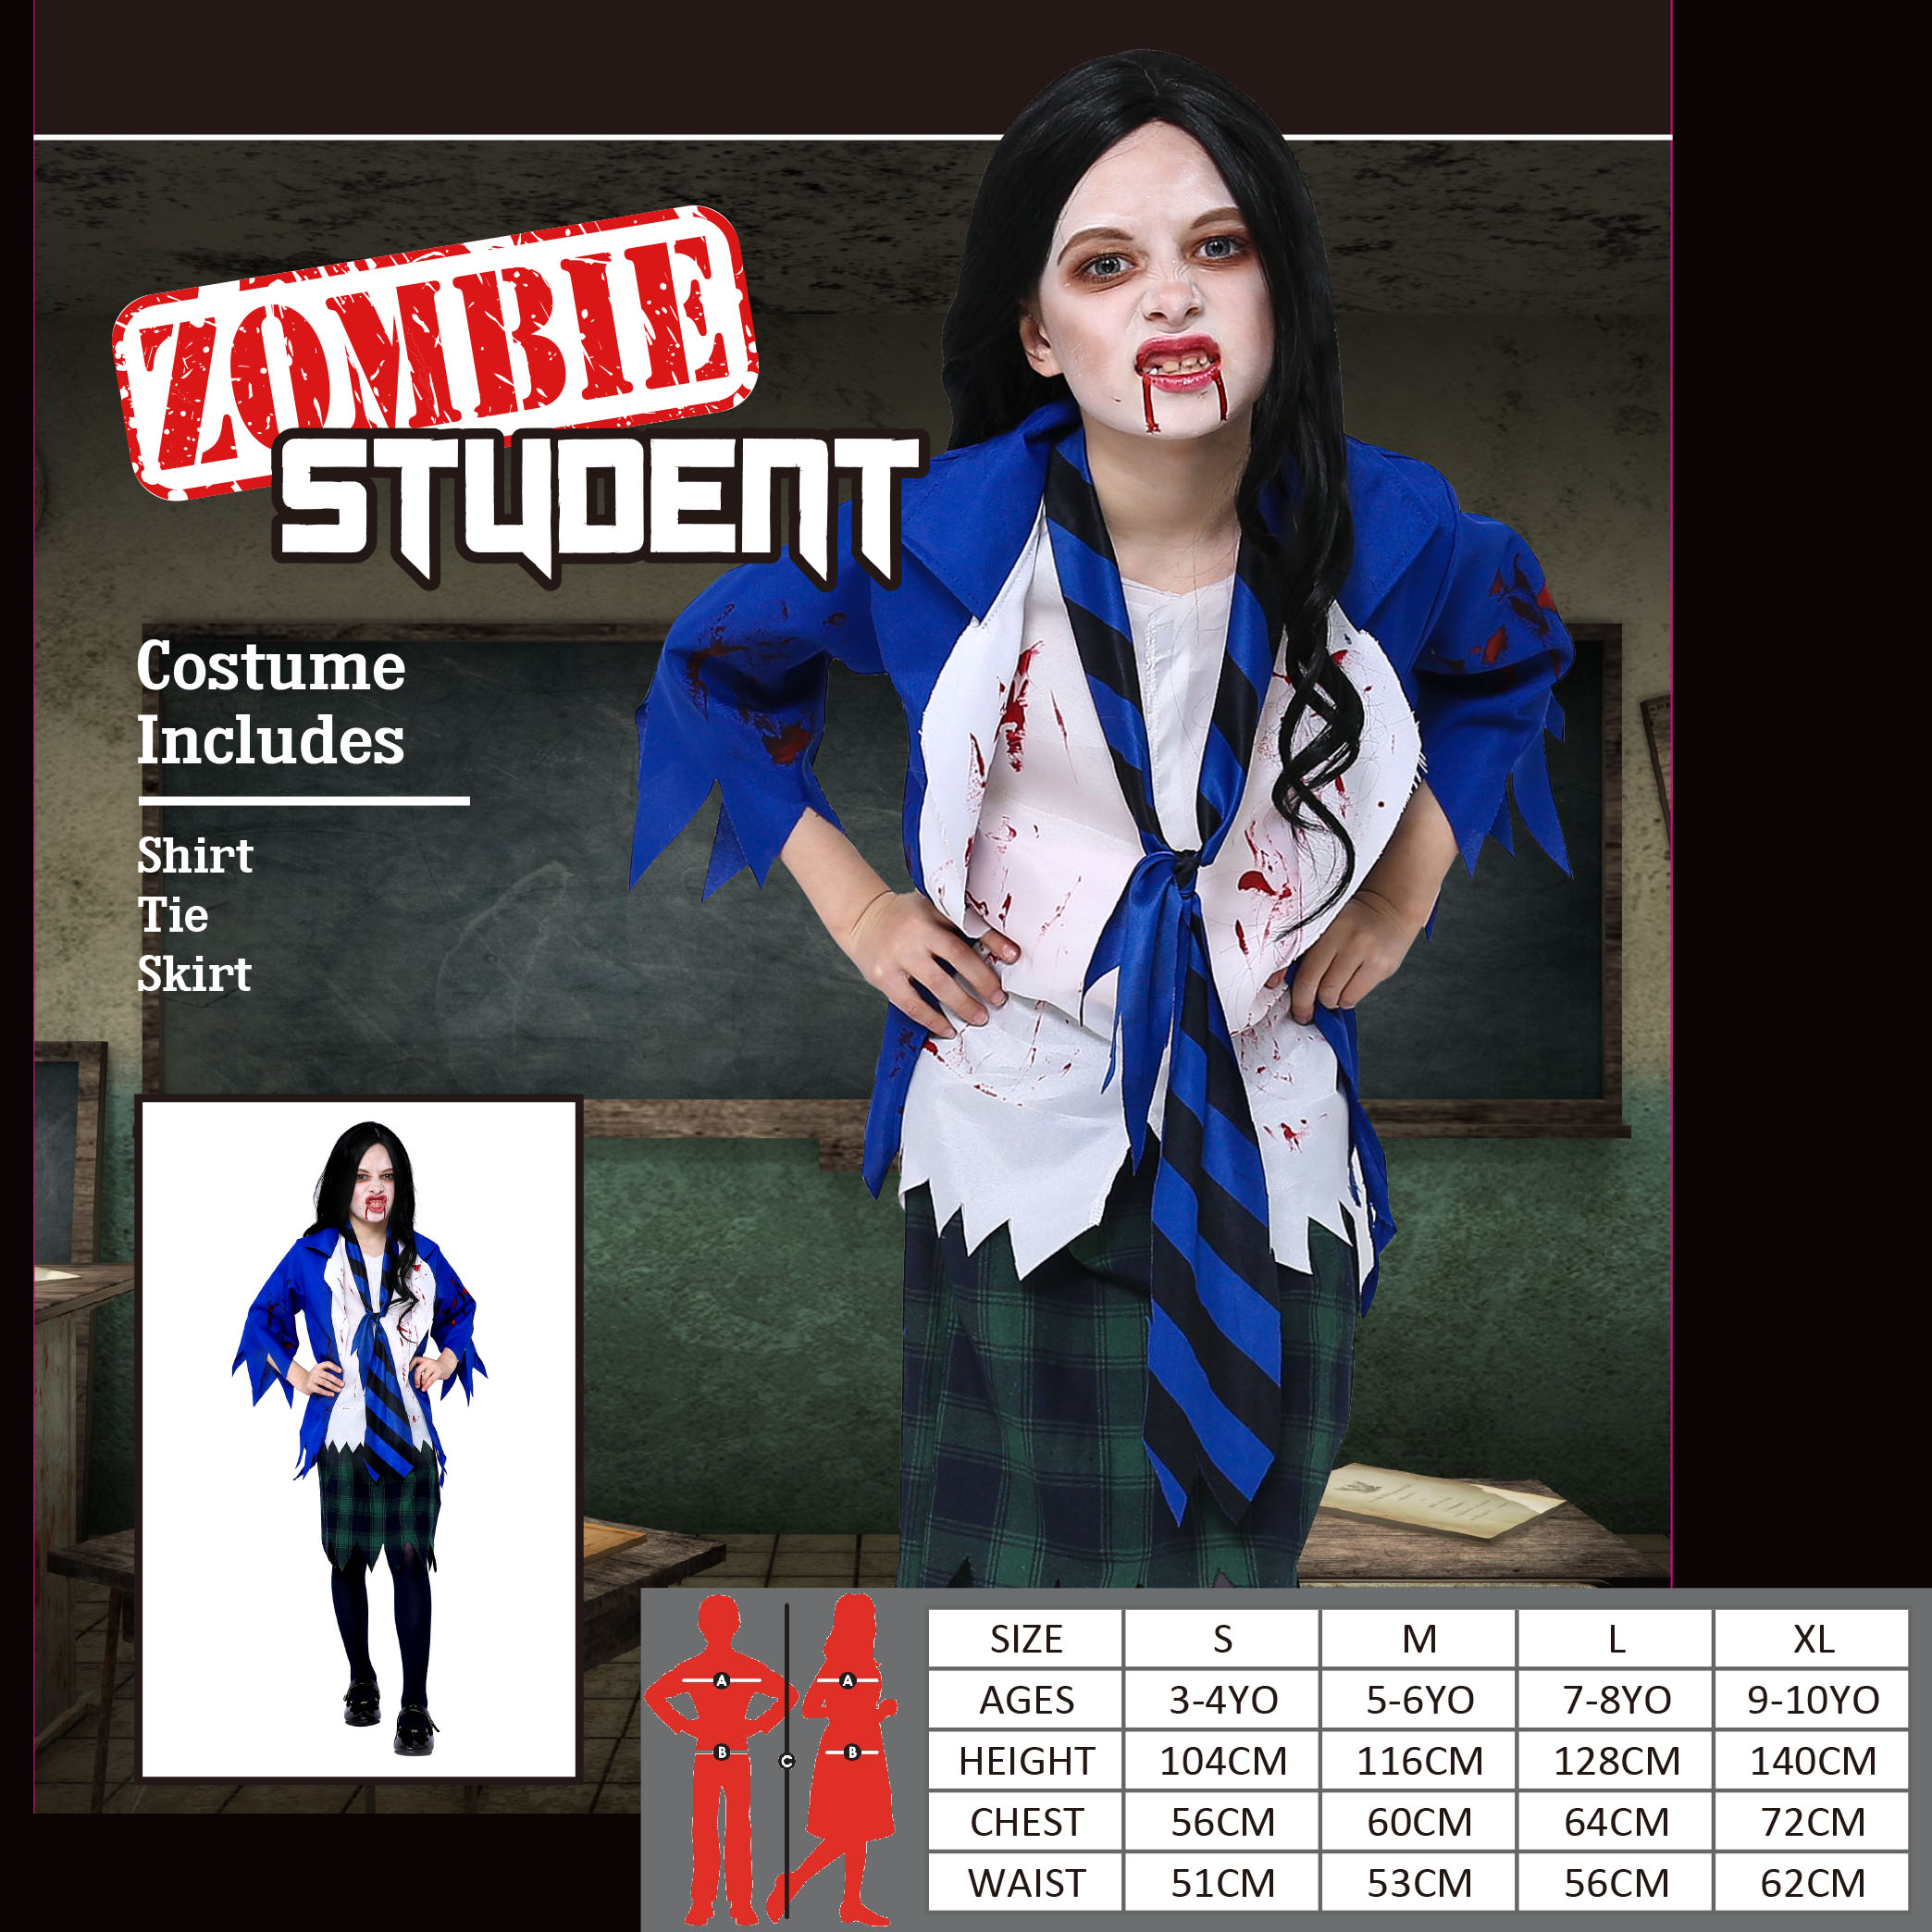 Zombie Student Costume